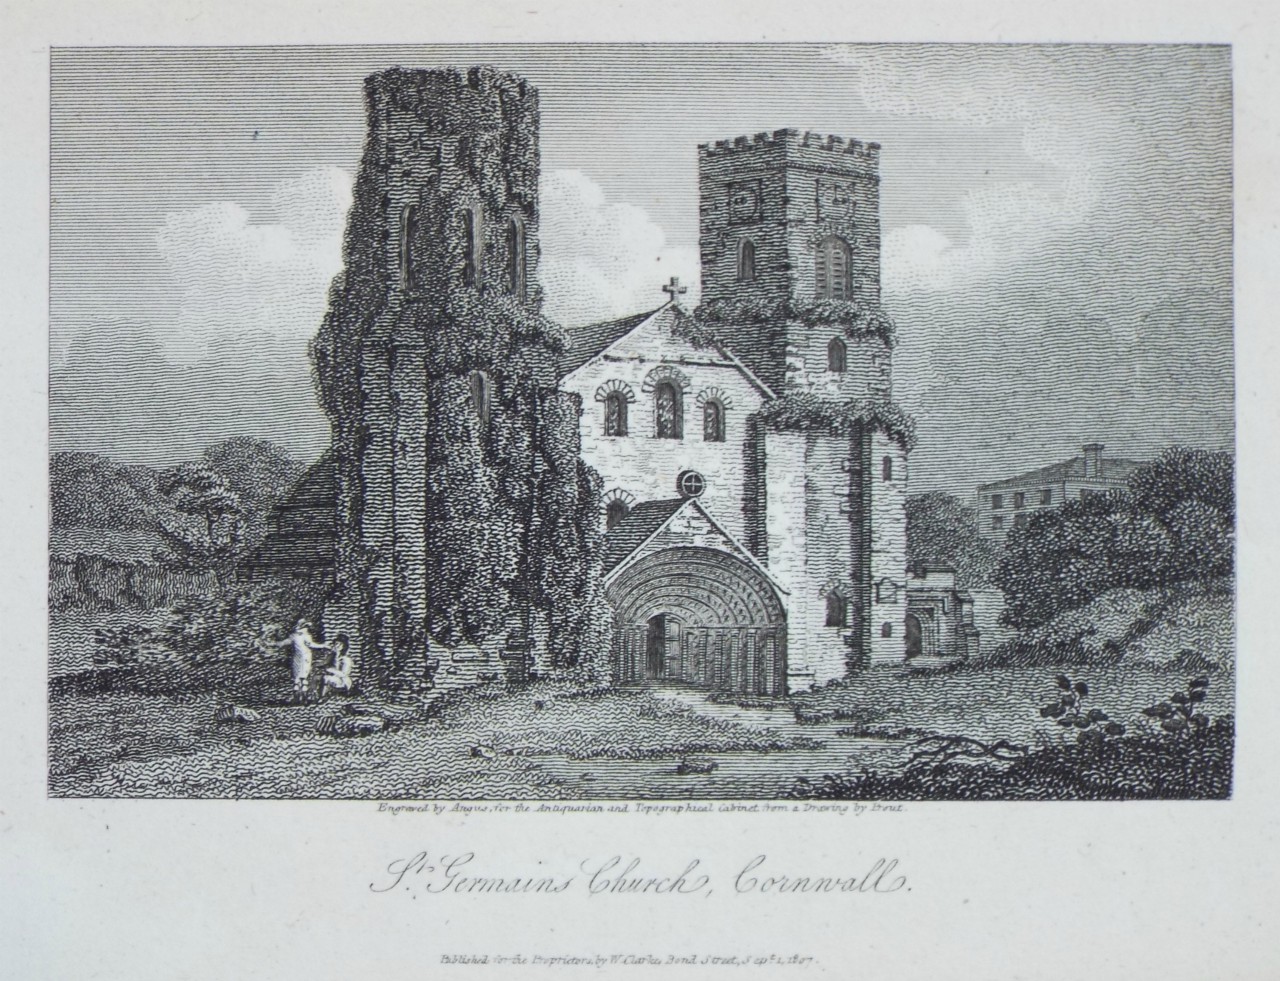 Print - St. Germains Church, Cornwall. - 